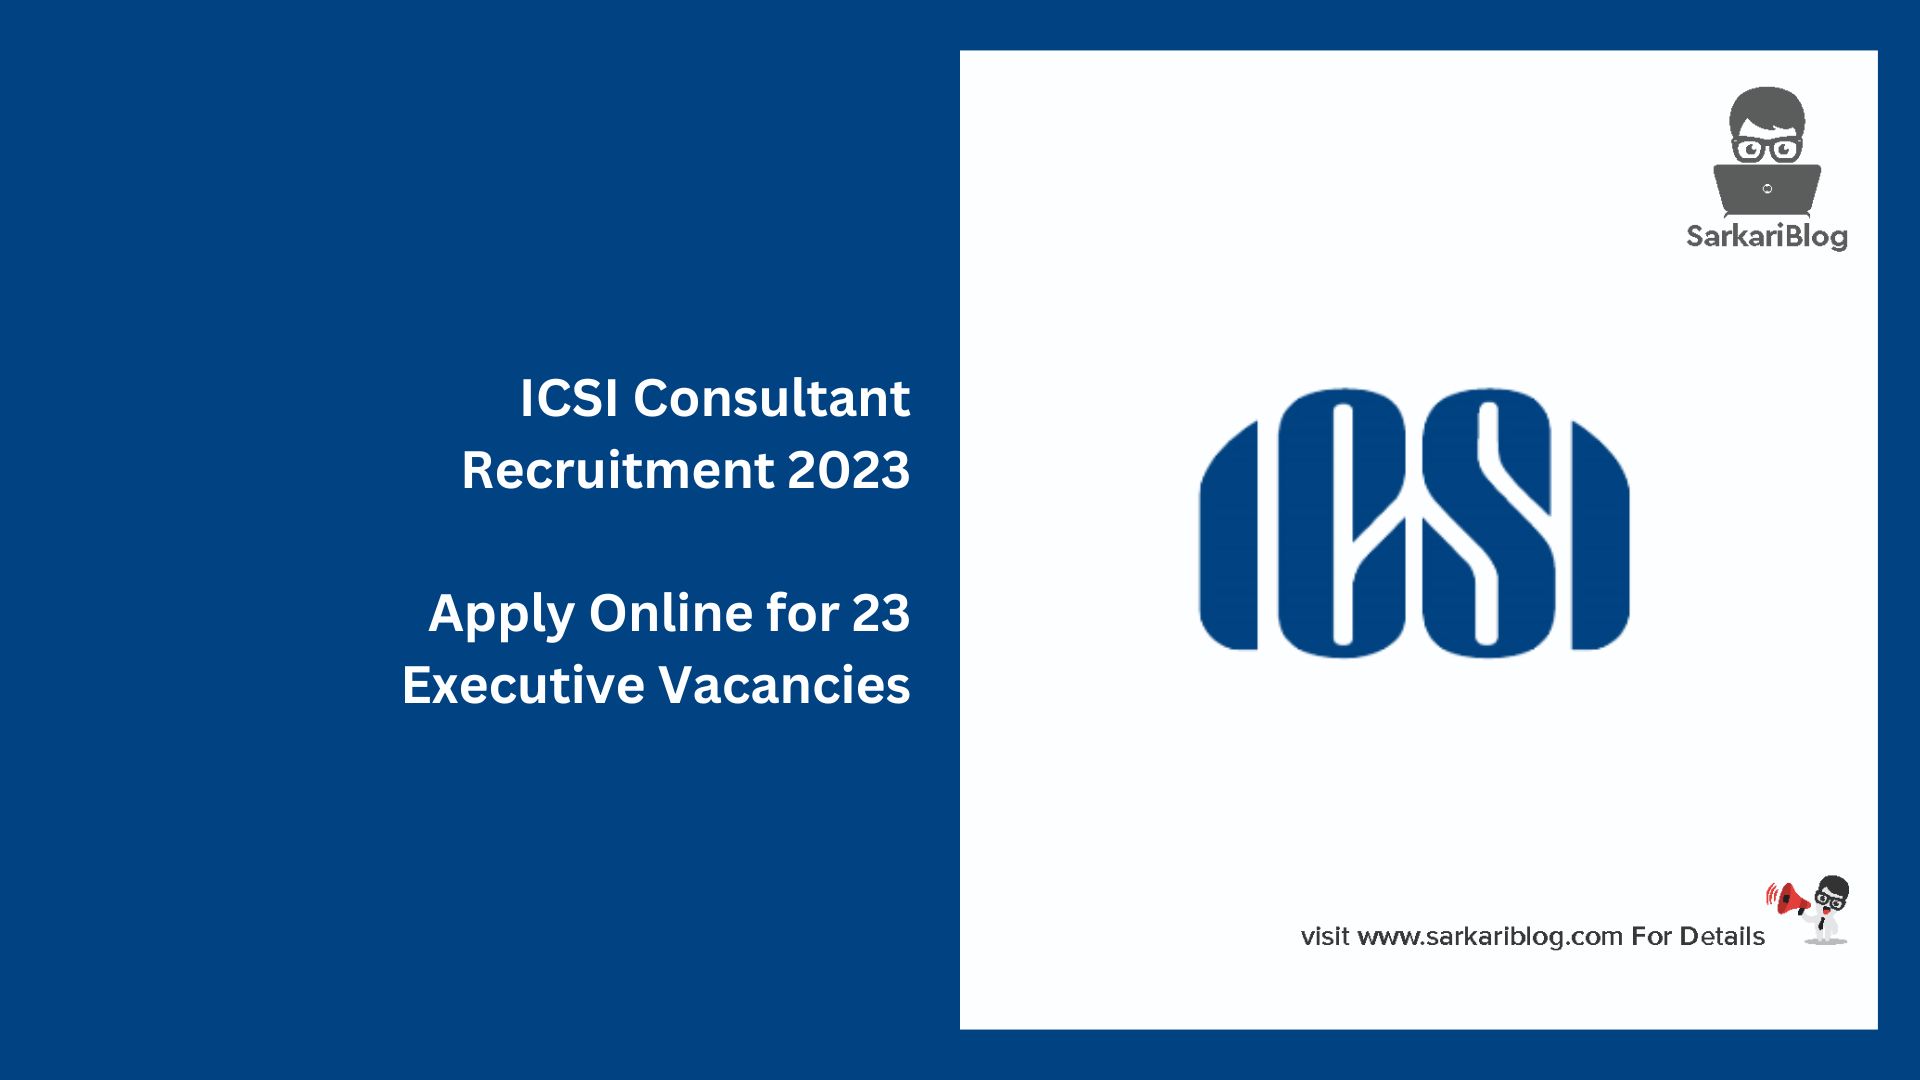 ICSI Consultant Recruitment 2023